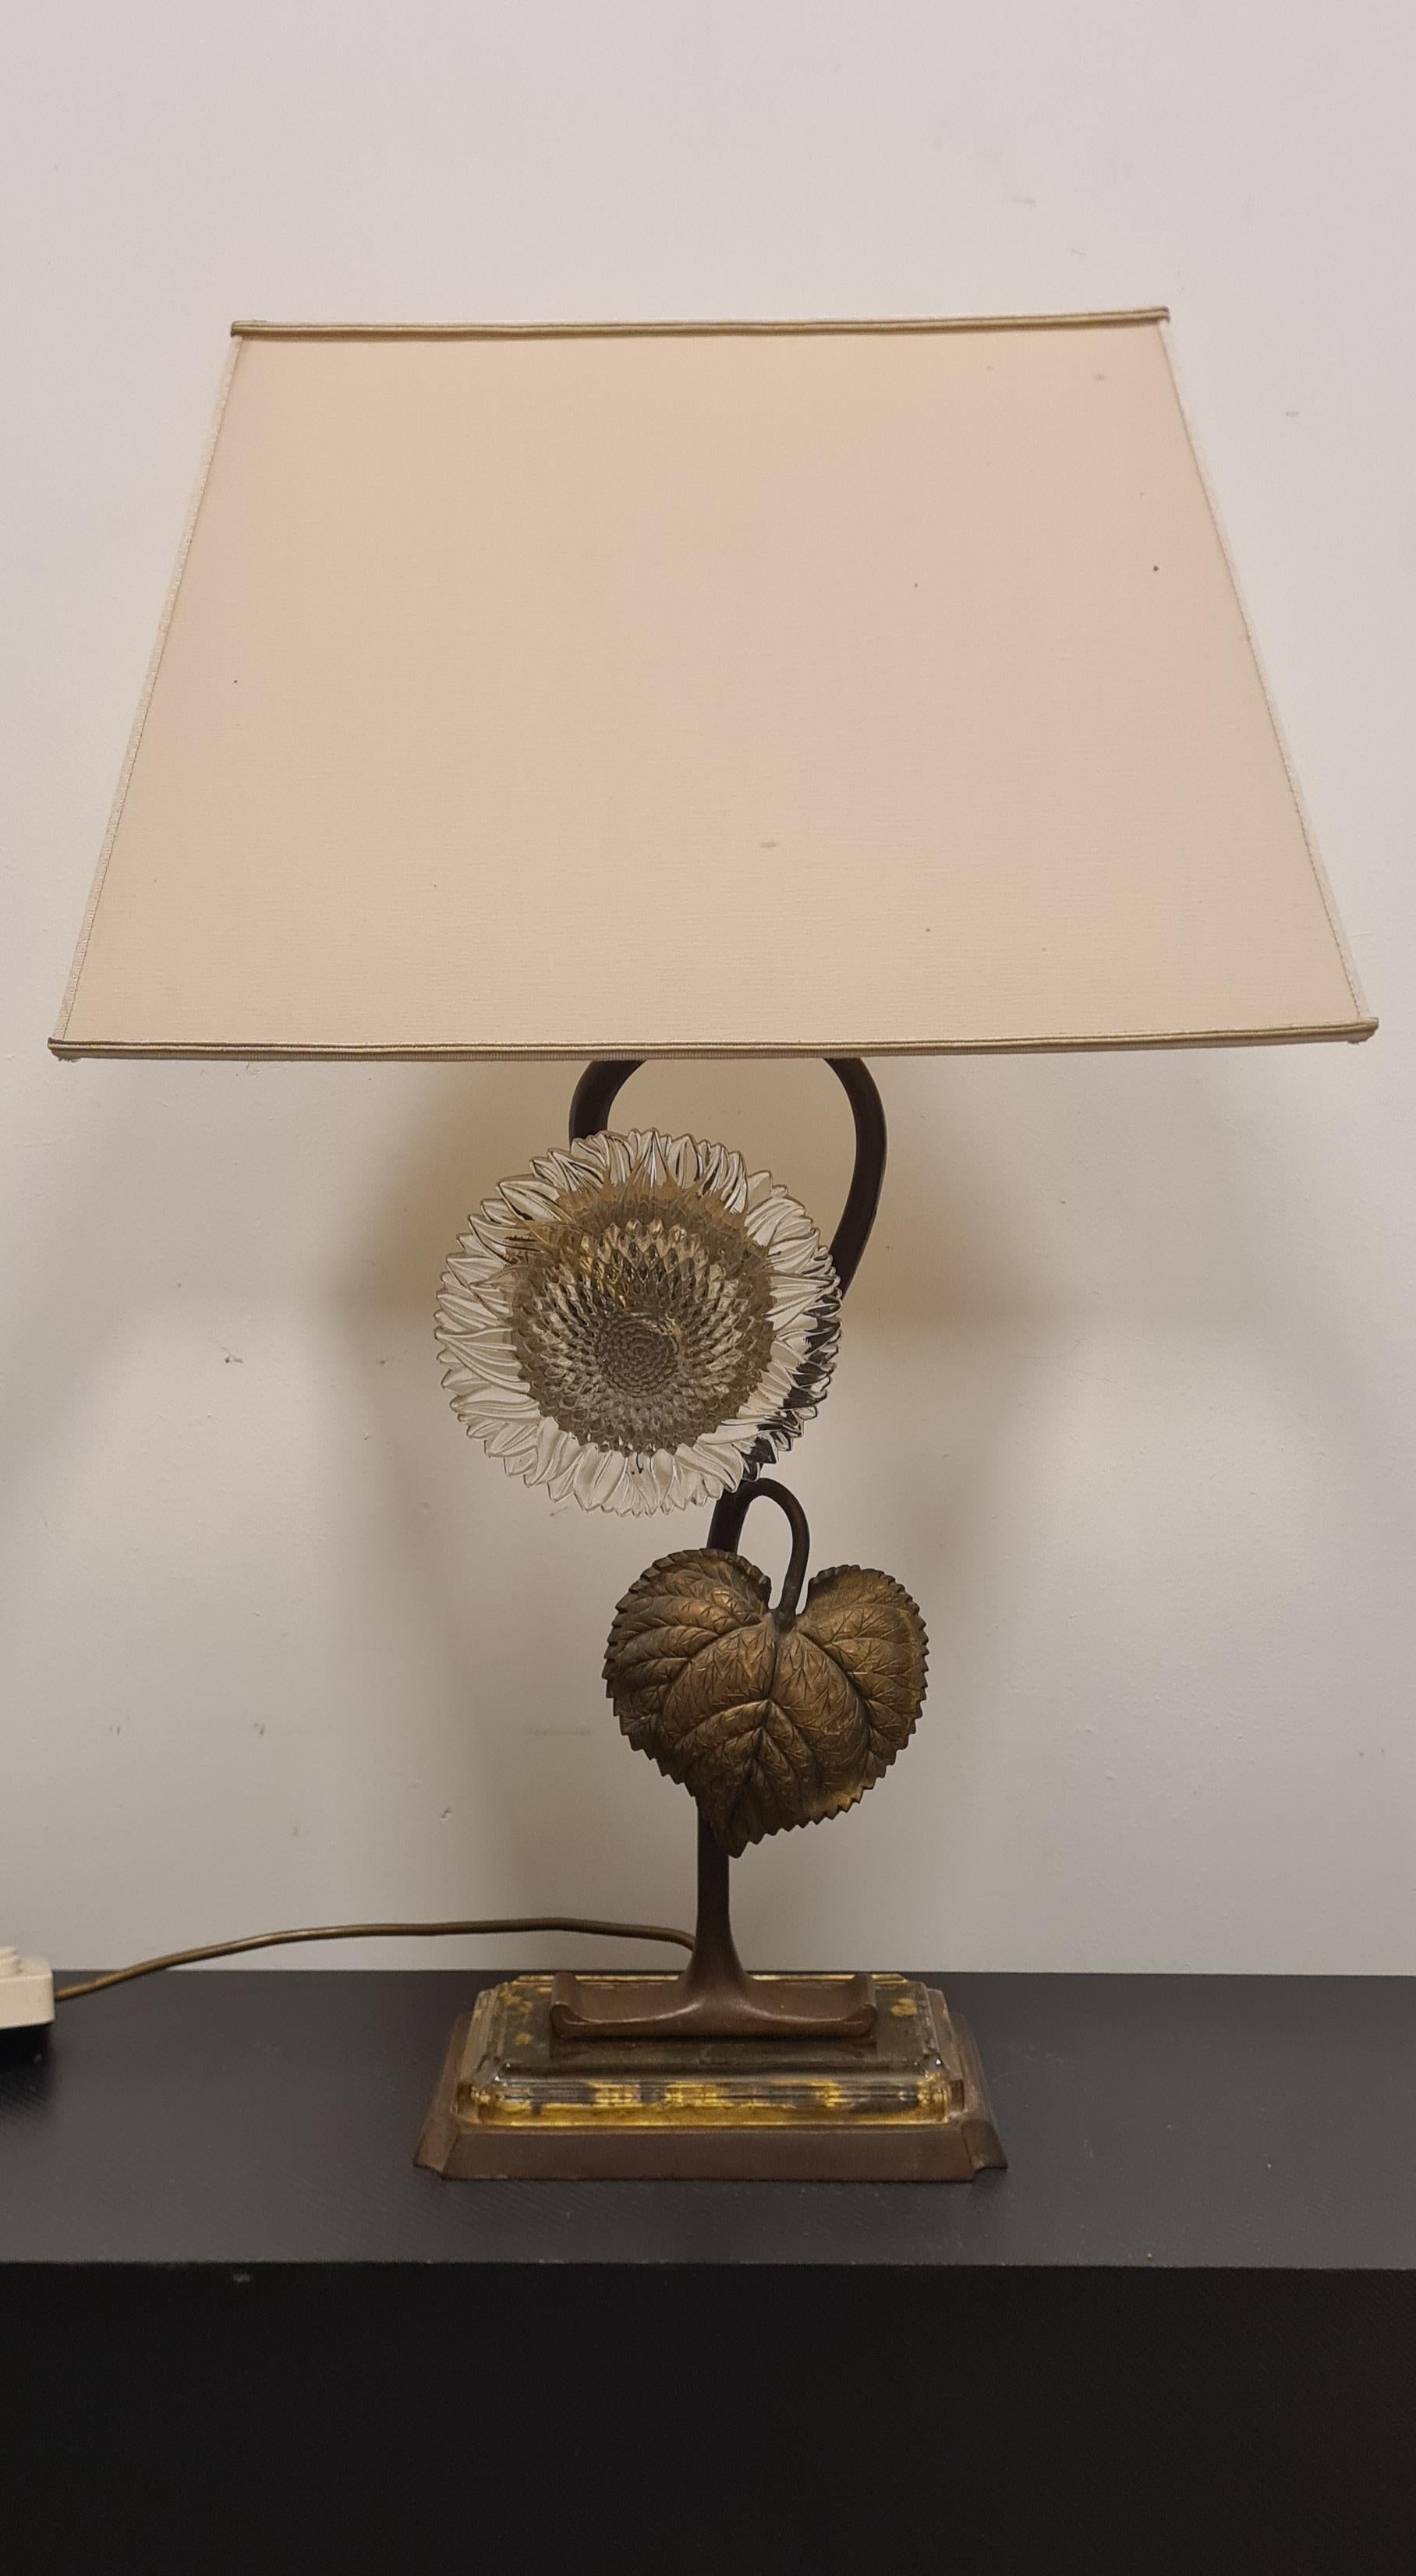 Lampe de table raffinée en bronze et verre tournesol.

Cette élégante lampe est composée d'une base en bronze et en verre d'où part une tige de tournesol en bronze.

La corolle du tournesol est un disque de verre travaillé.

La lampe dispose de